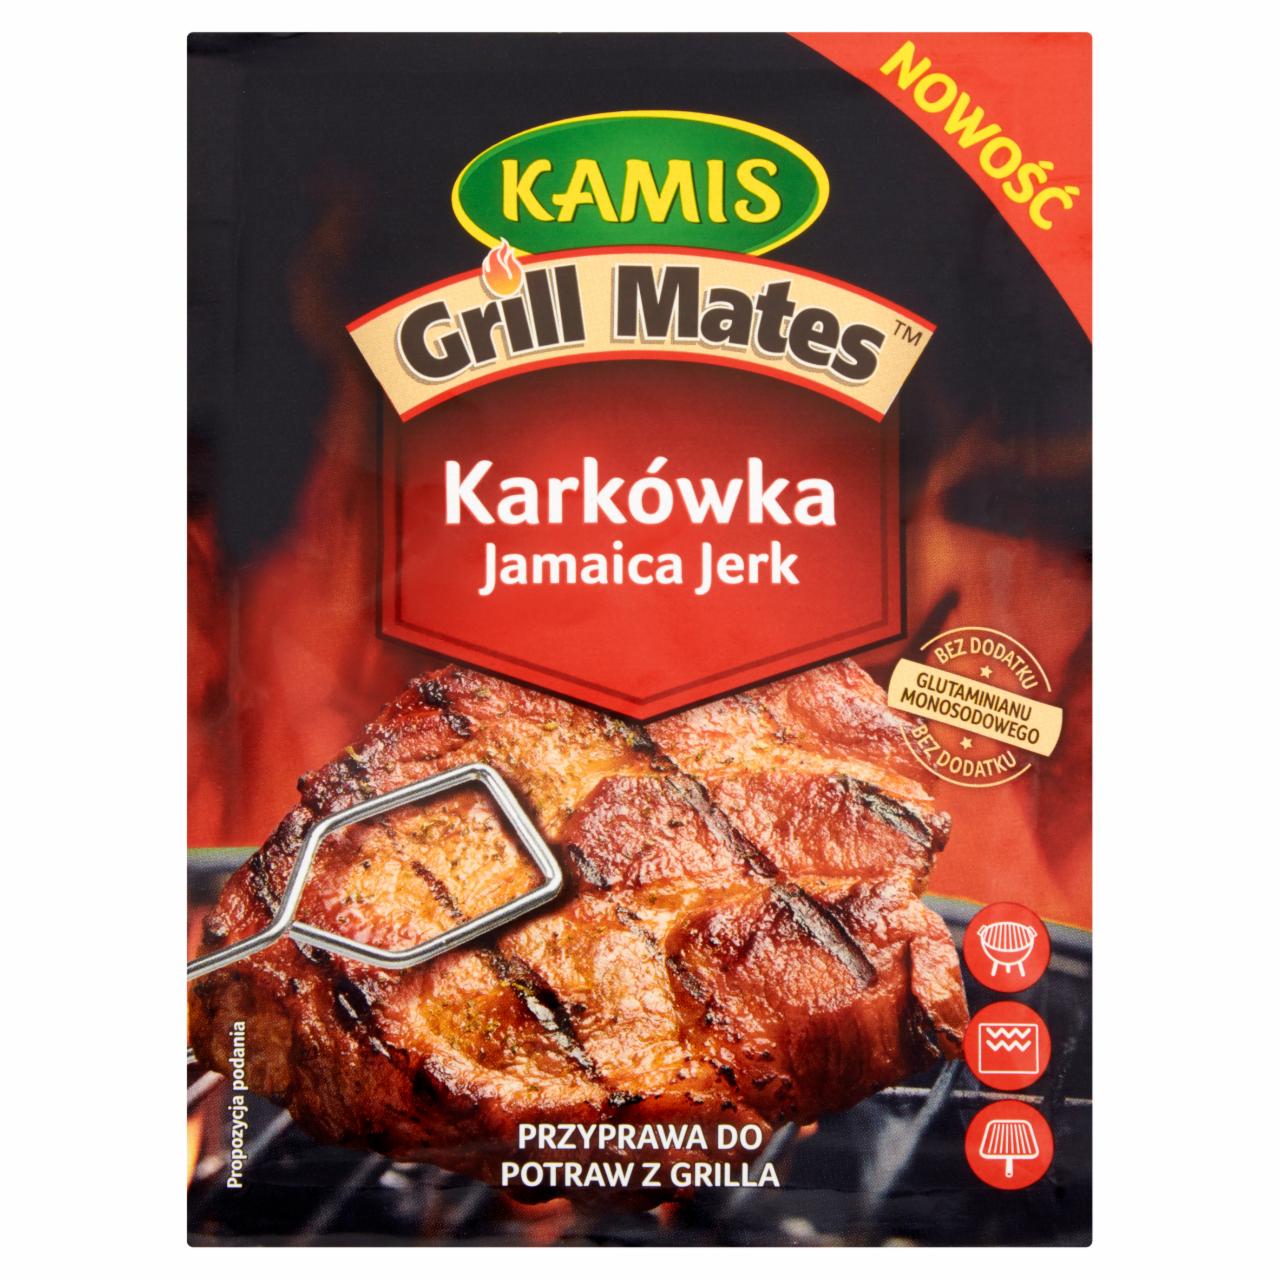 Zdjęcia - Kamis Grill Mates Karkówka Jamaica Jerk Przyprawa do potraw z grilla 20 g